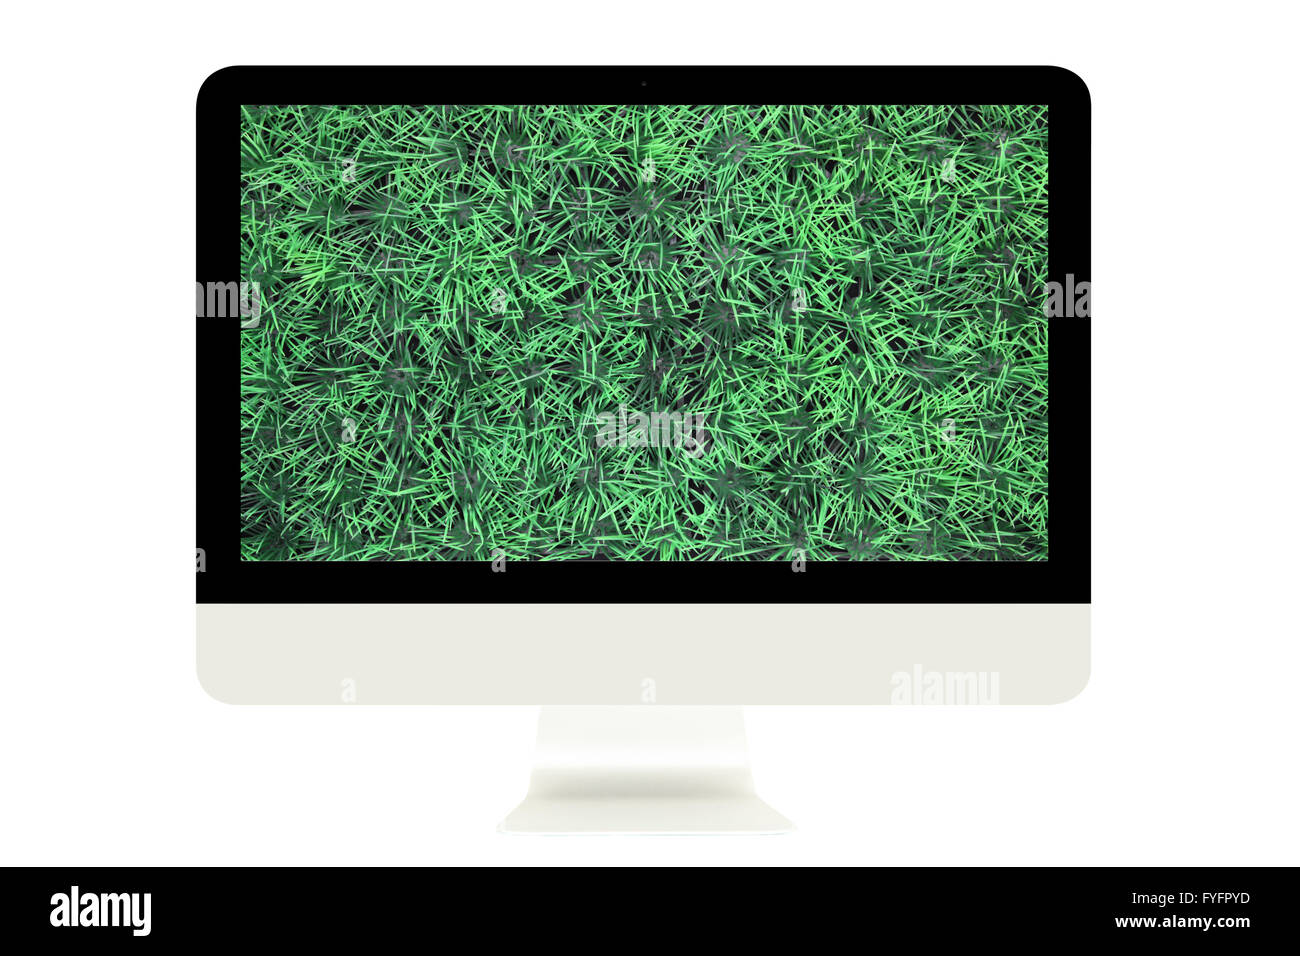 Le moniteur de l'ordinateur avec l'herbe verte à l'écran isolé sur fond blanc. Banque D'Images